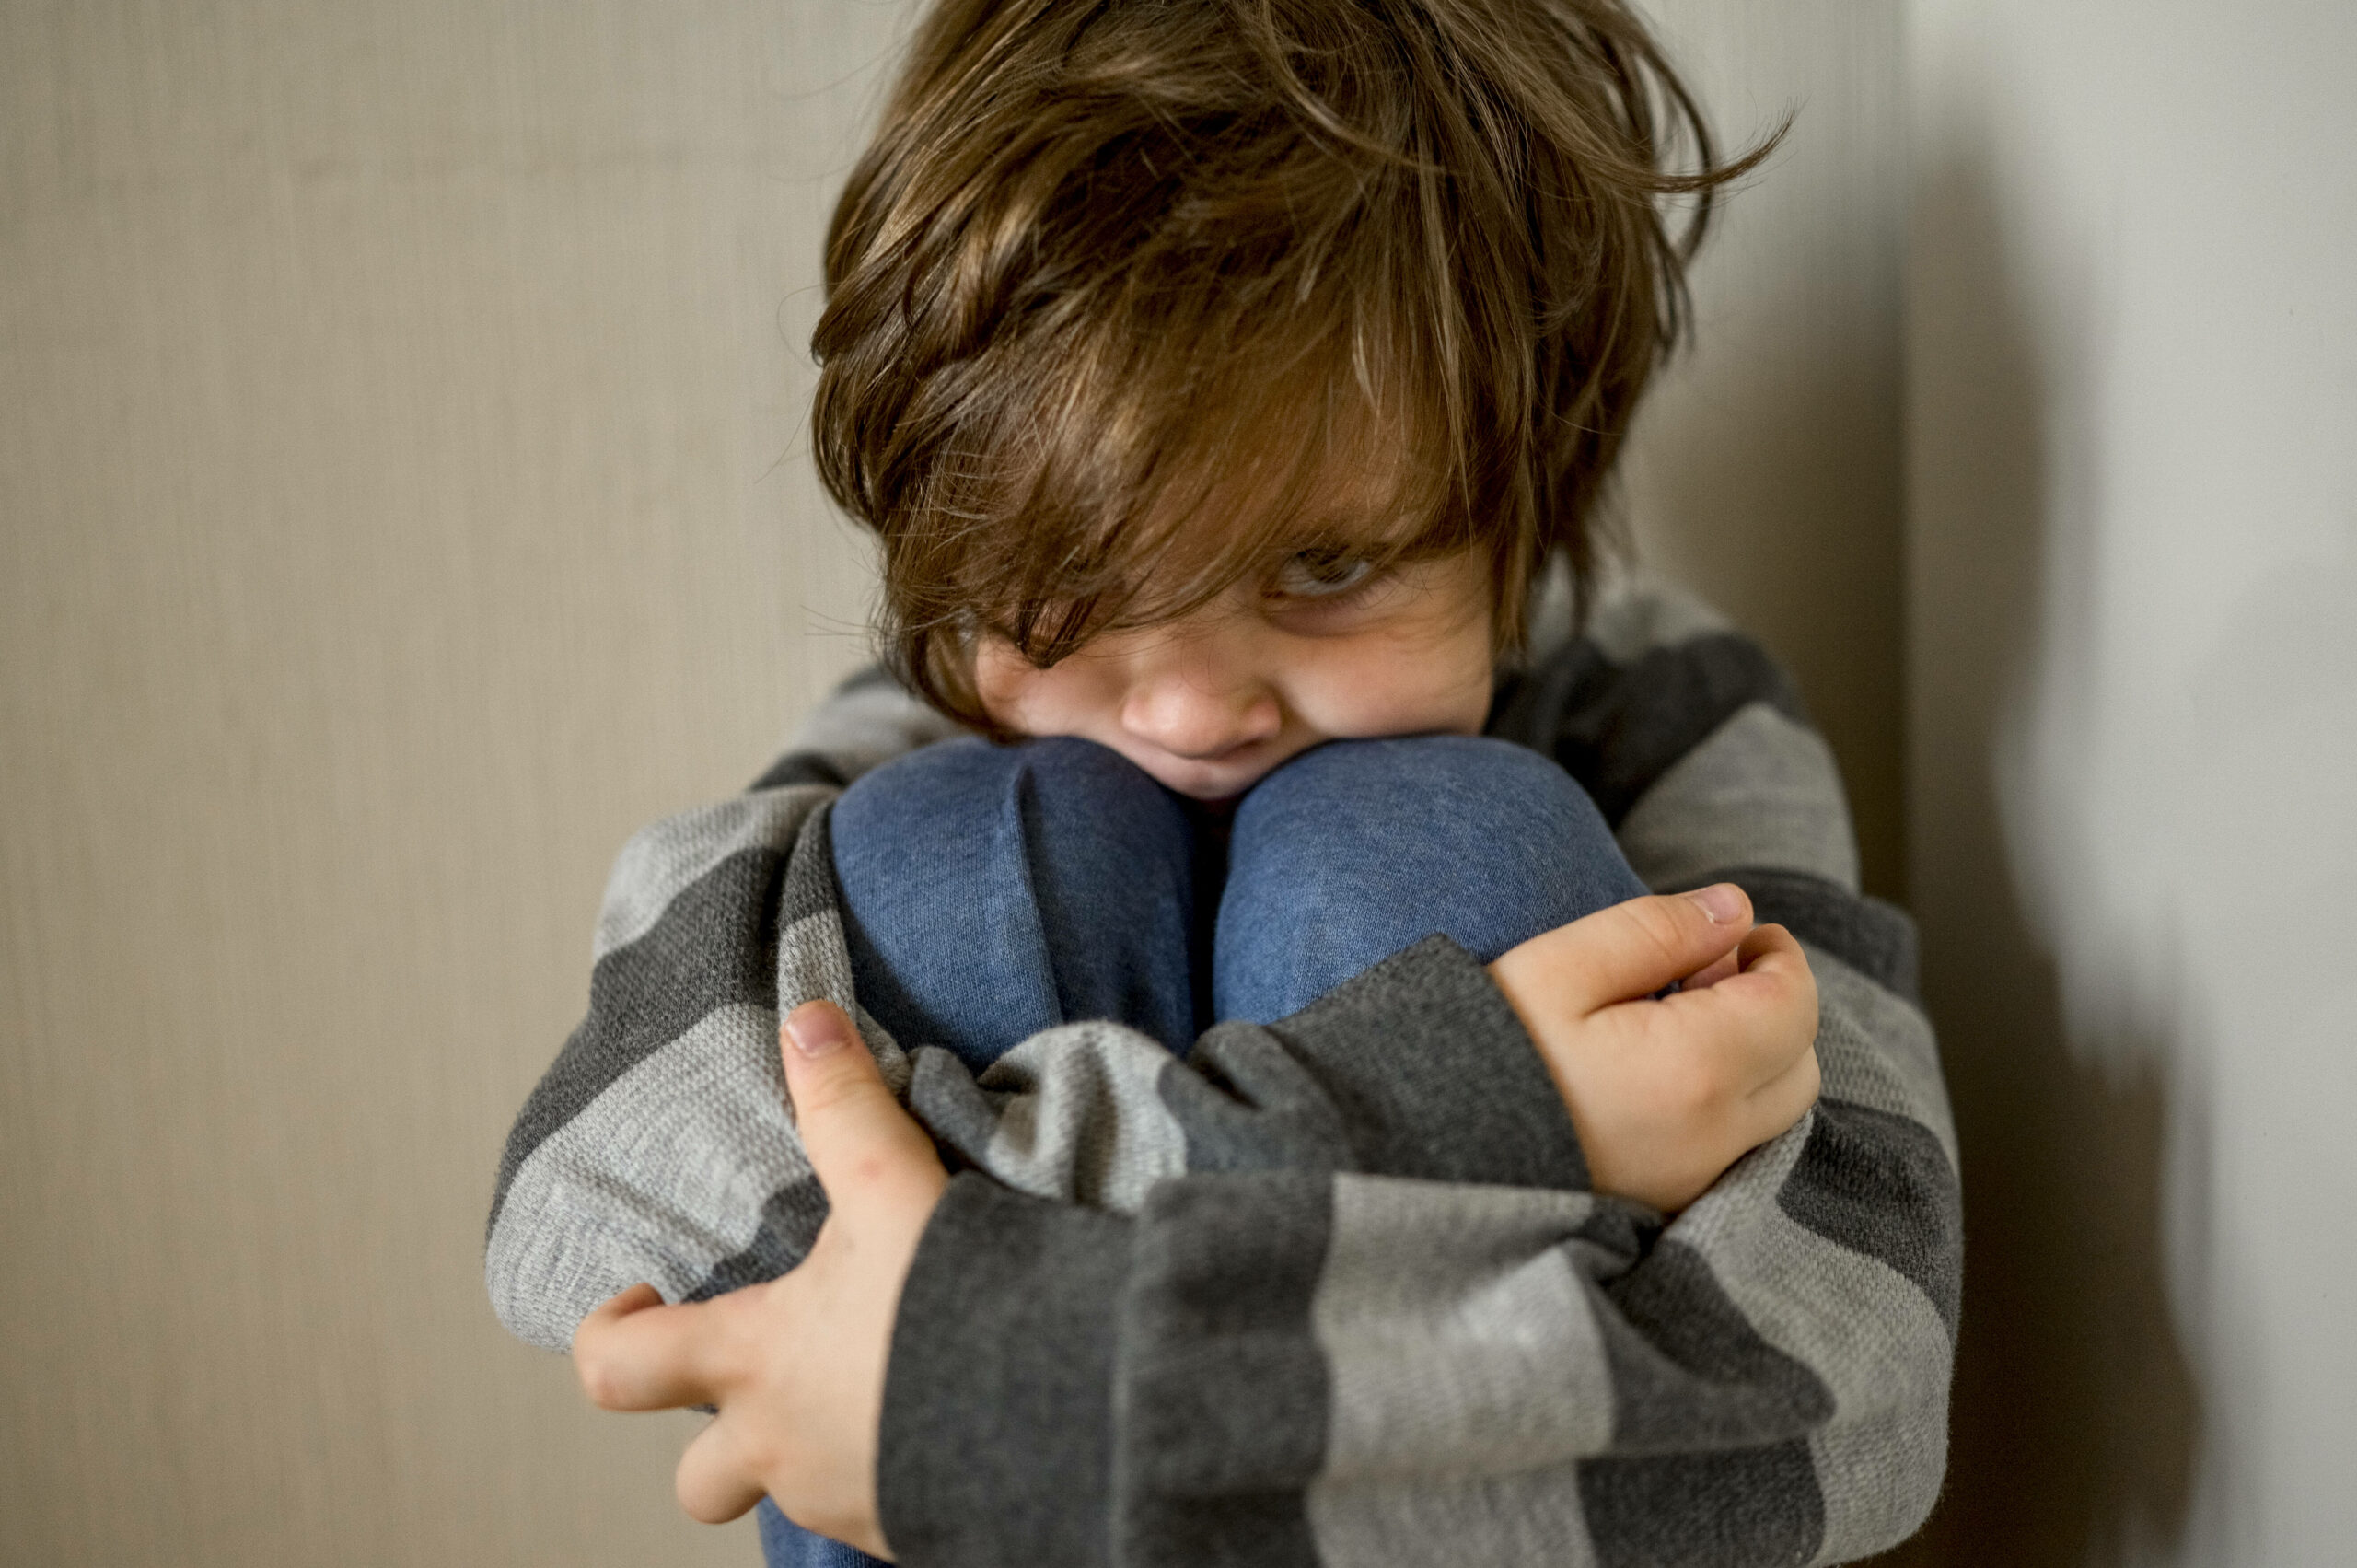 Eine neue Umfrage zeigt, dass Eltern ihre Kinder in den vergangenen beiden Jahren besonders gestresst erlebt haben. (Symbolbild)